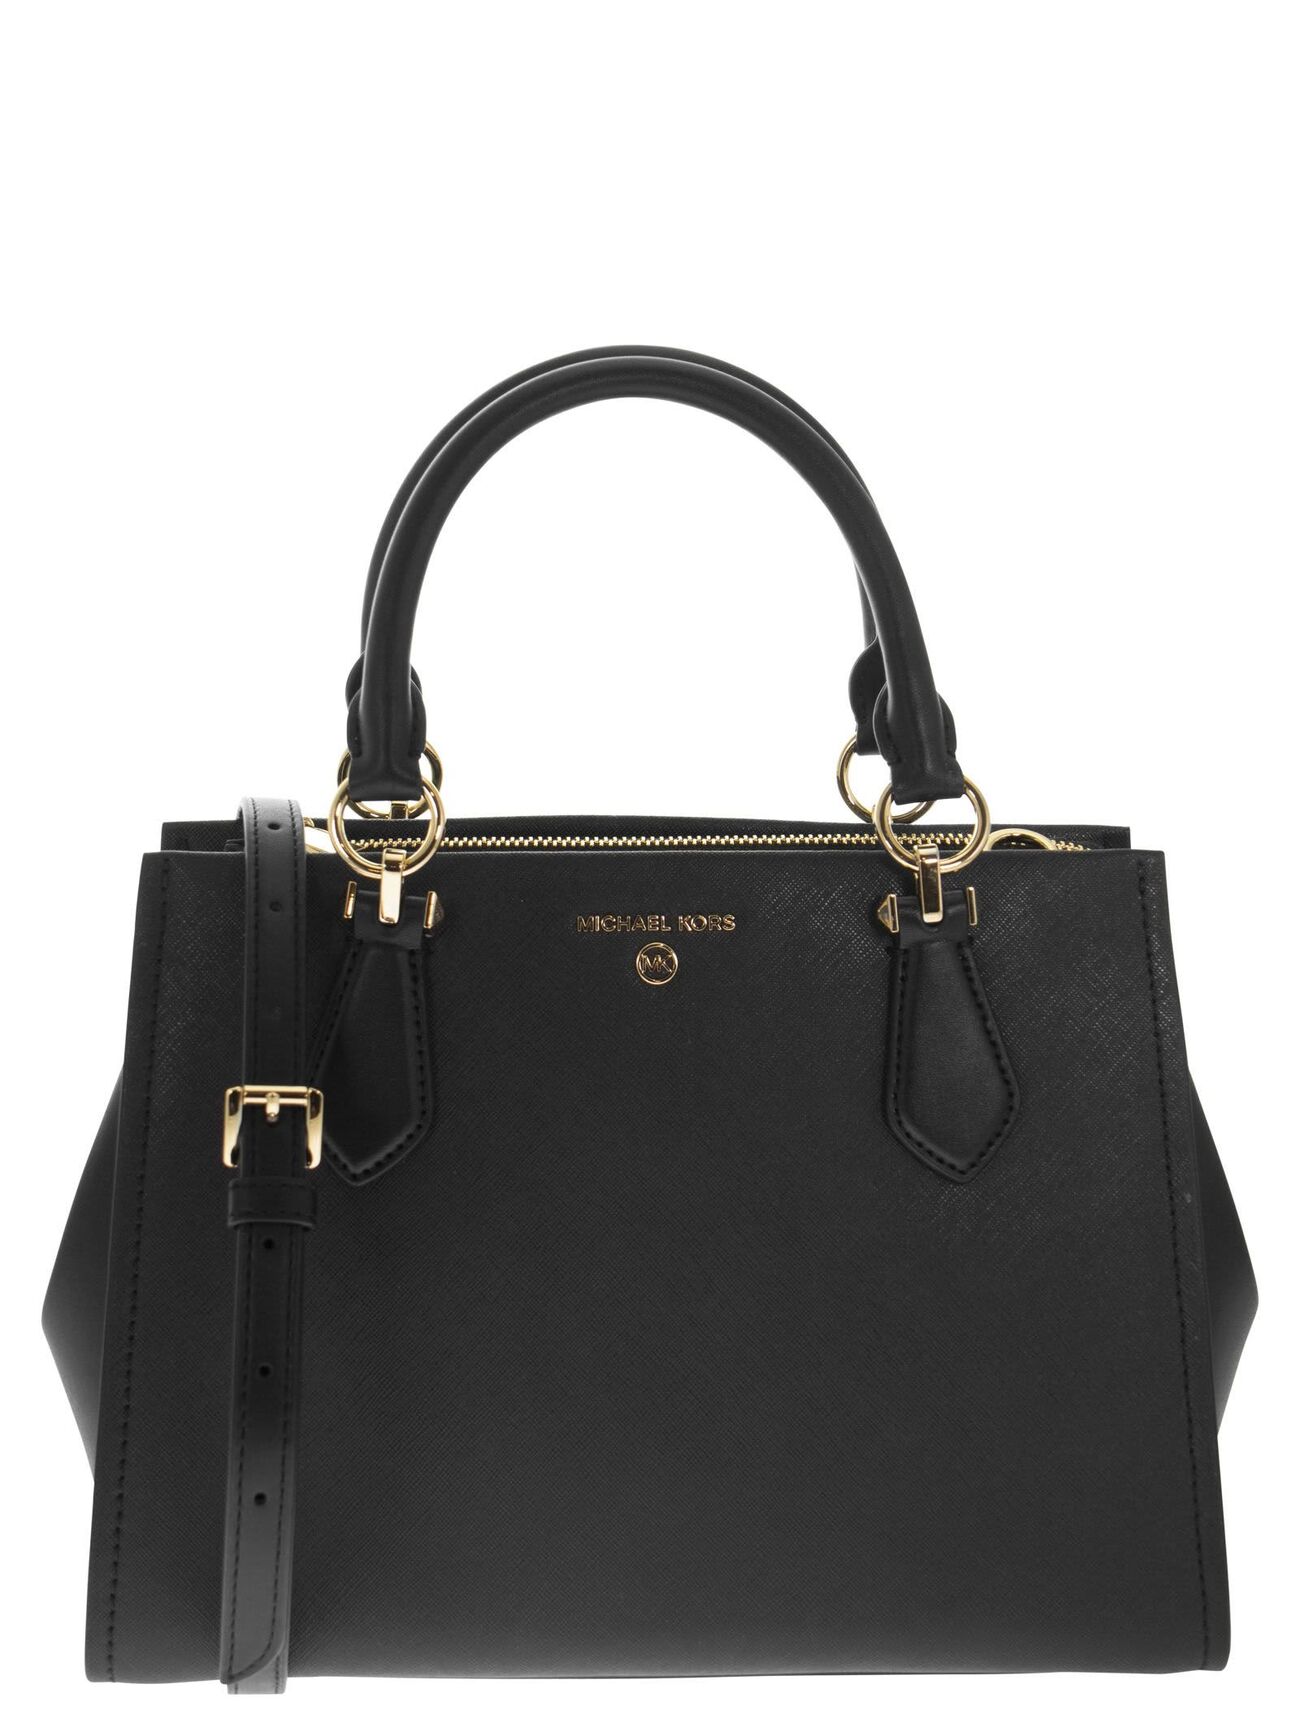 Michael Kors Medium Marilyn Handbag In Saffiano Leather in black